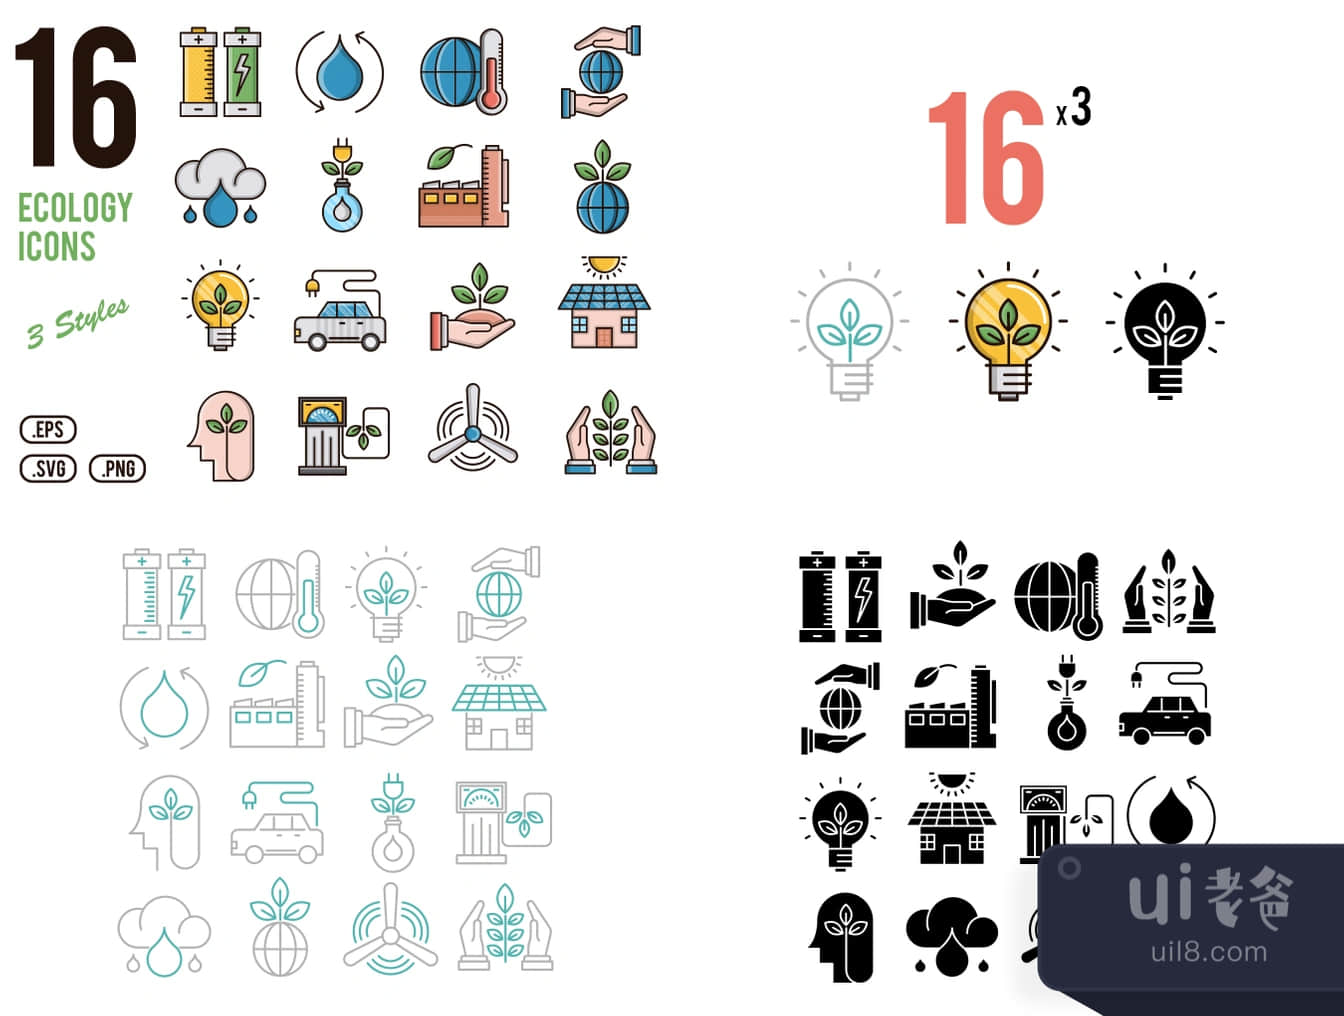 16个生态学图标 (16 Ecology Icons)插图1